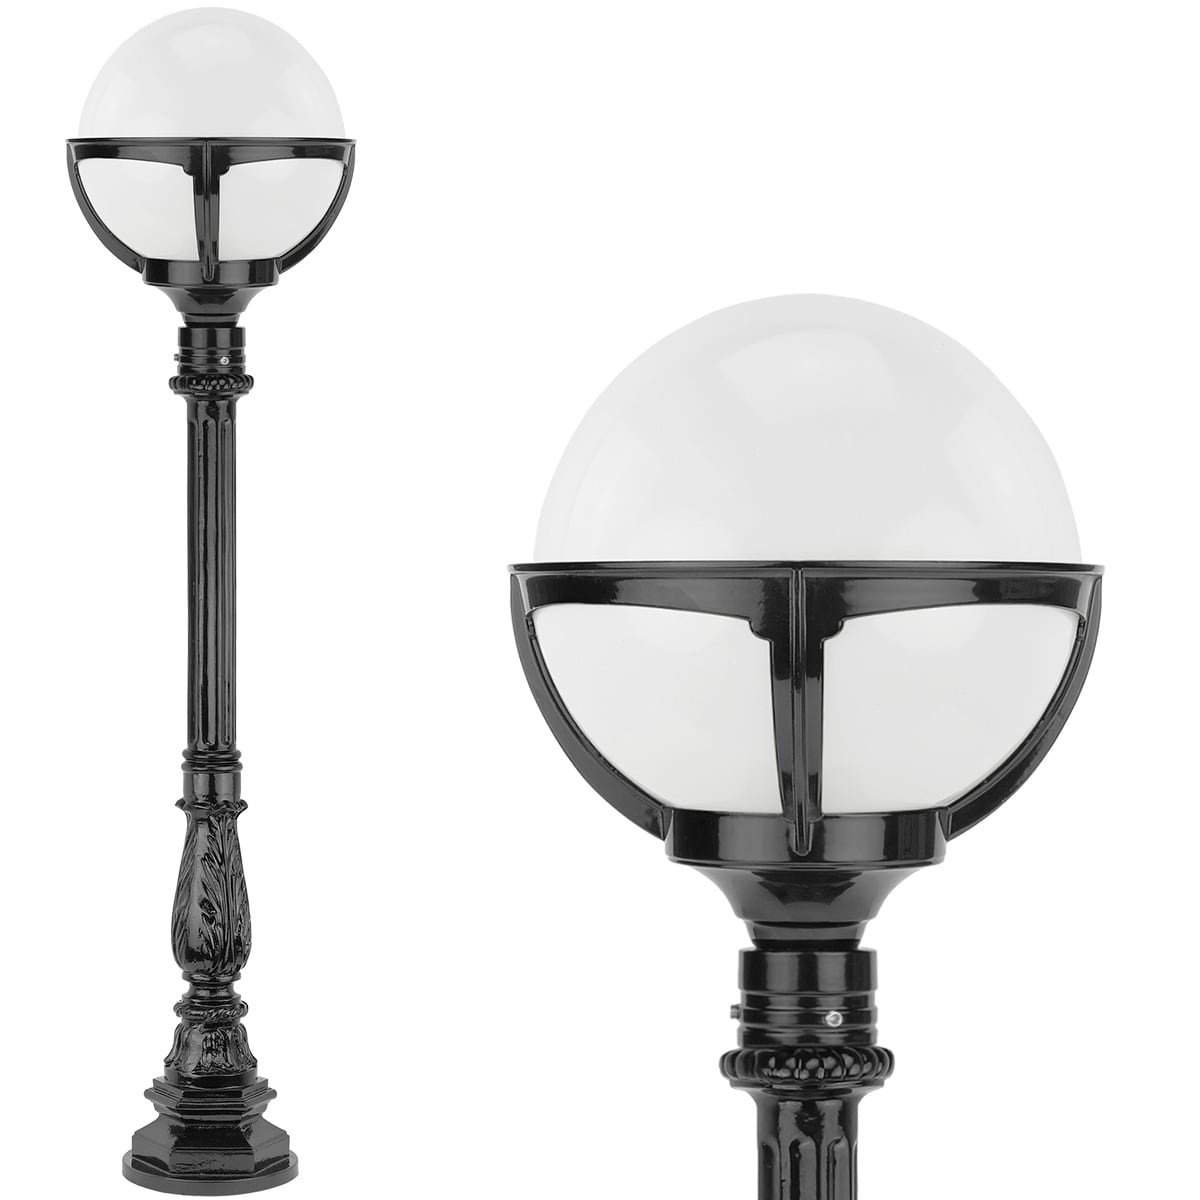 Buitenlampen Klassiek Landelijk Bollamp op paal wit glas Boerdam - 120 cm